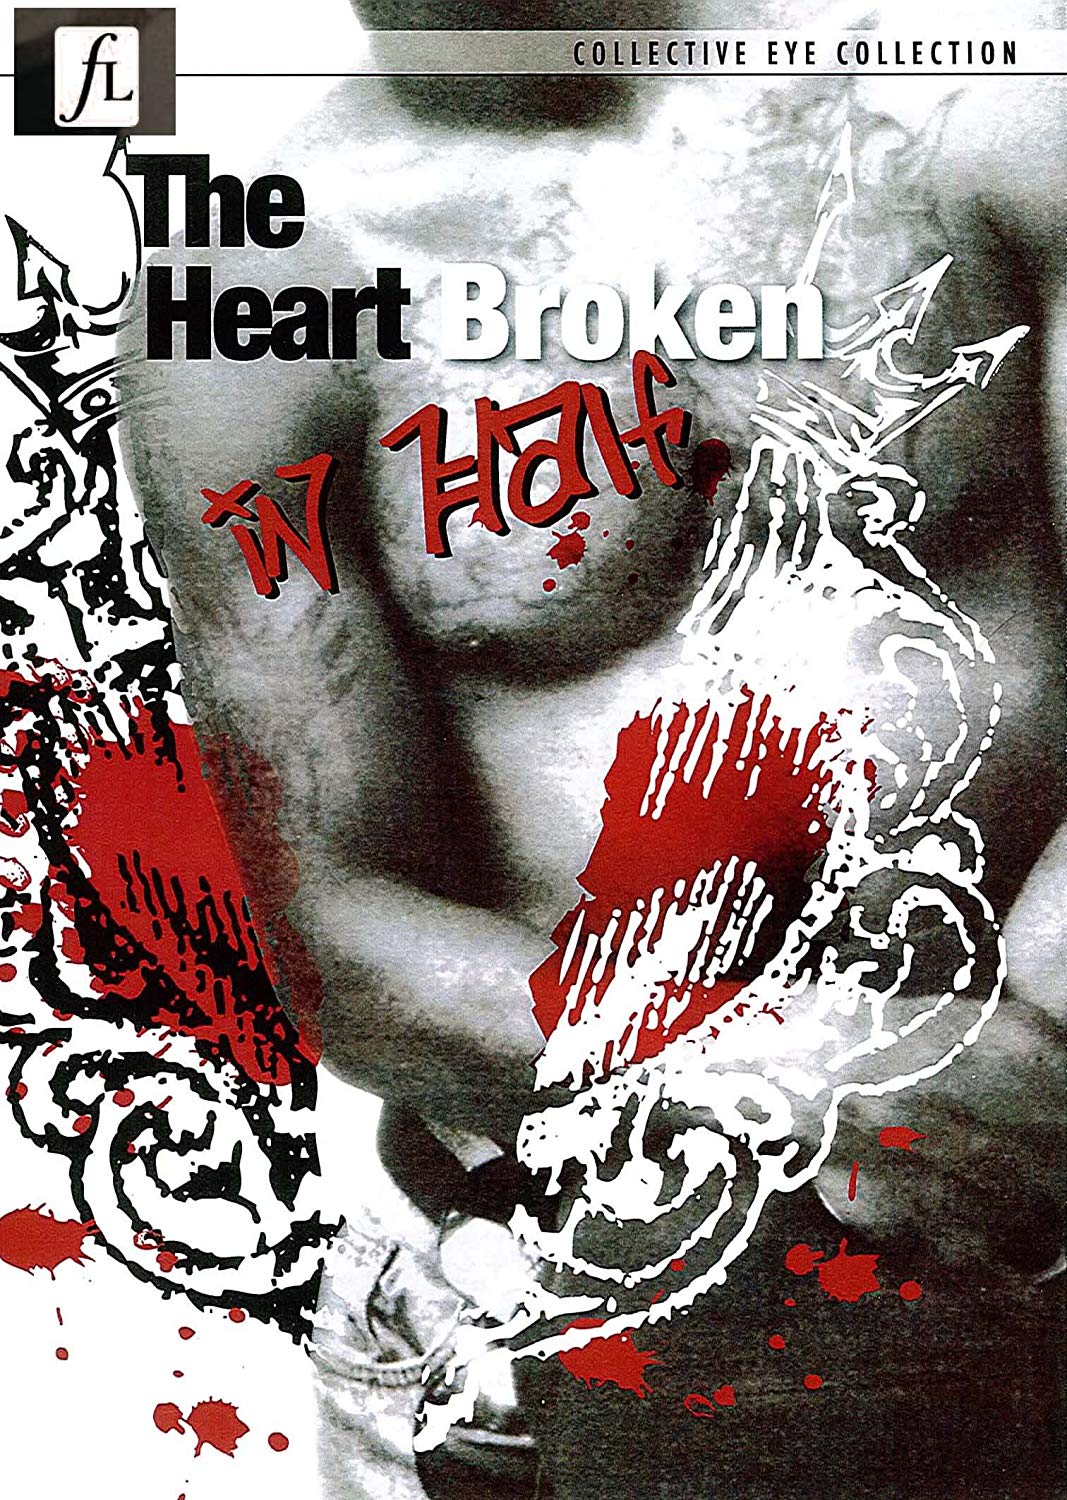 The Heart Broken in Half